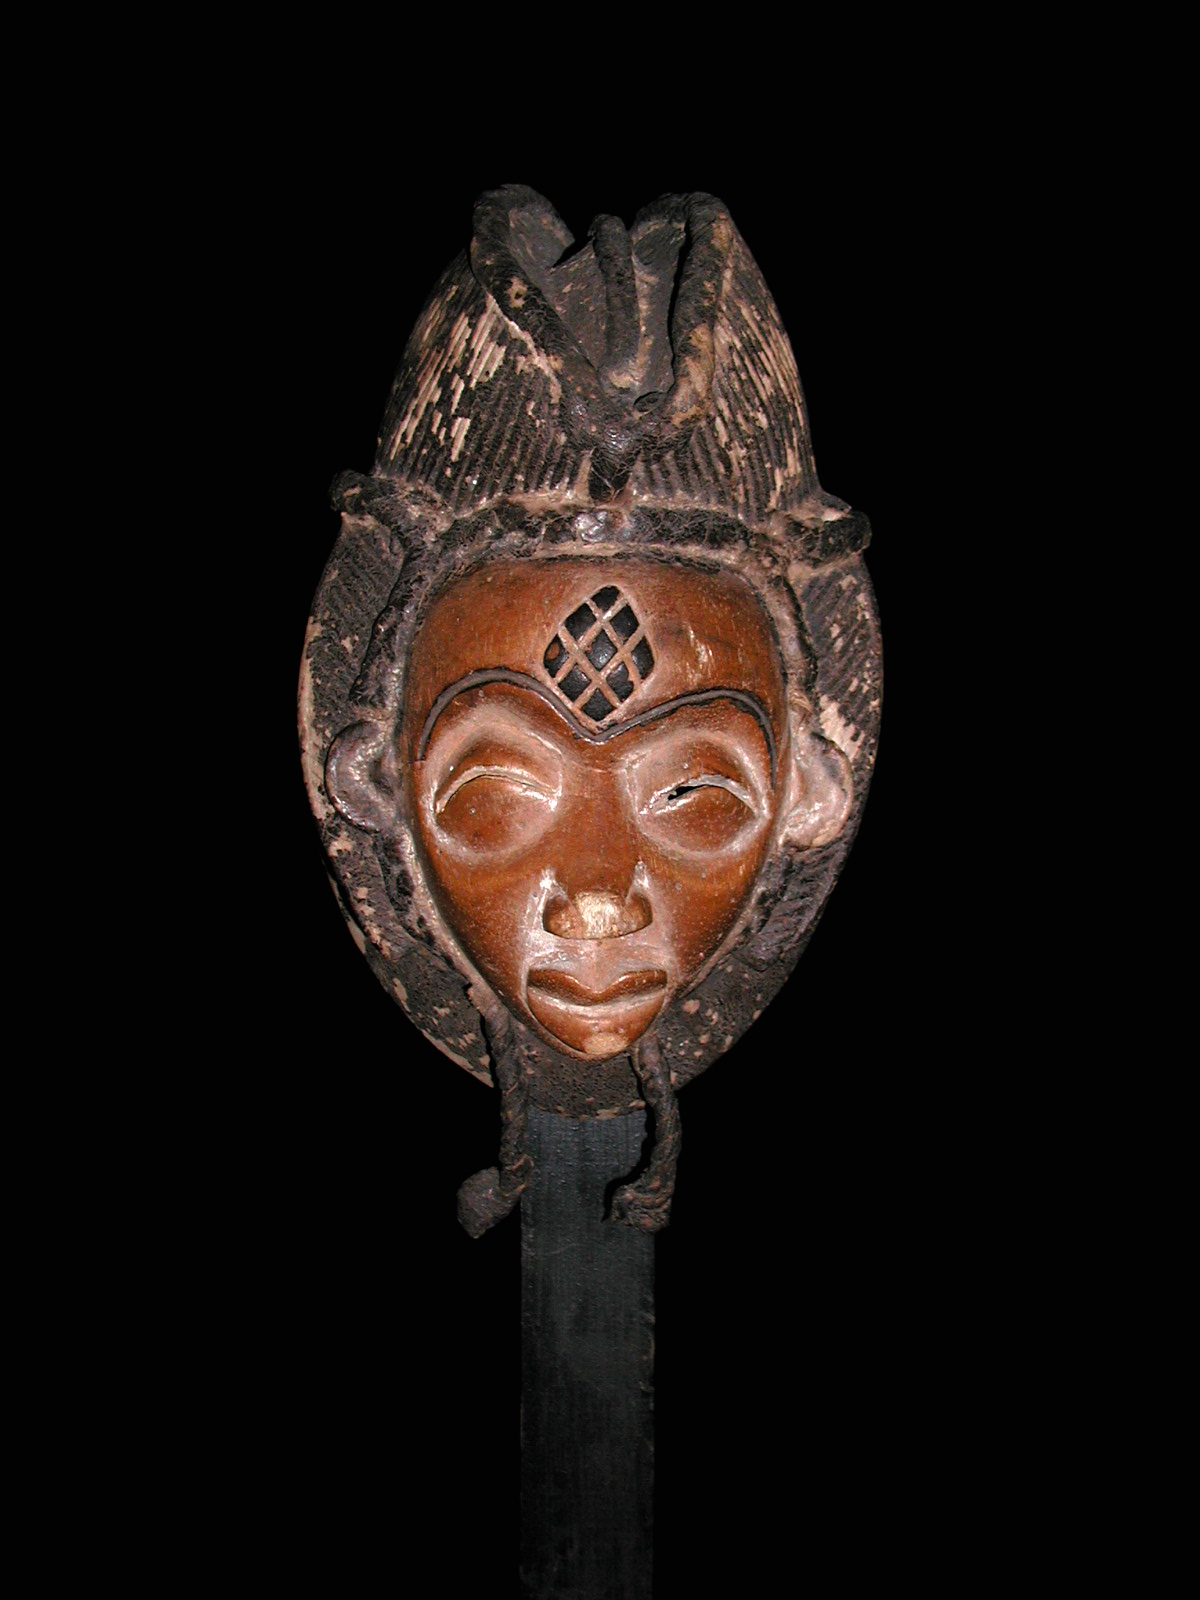 Pounou(masque), d`afrique : Gabon, statuette Pounou(masque), masque ancien africain Pounou(masque), art du Gabon - Art Africain, collection privées Belgique. Statue africaine de la tribu des Pounou(masque), provenant du Gabon, 867 Très beau et ancien masque PUNU, représentation symbolique d